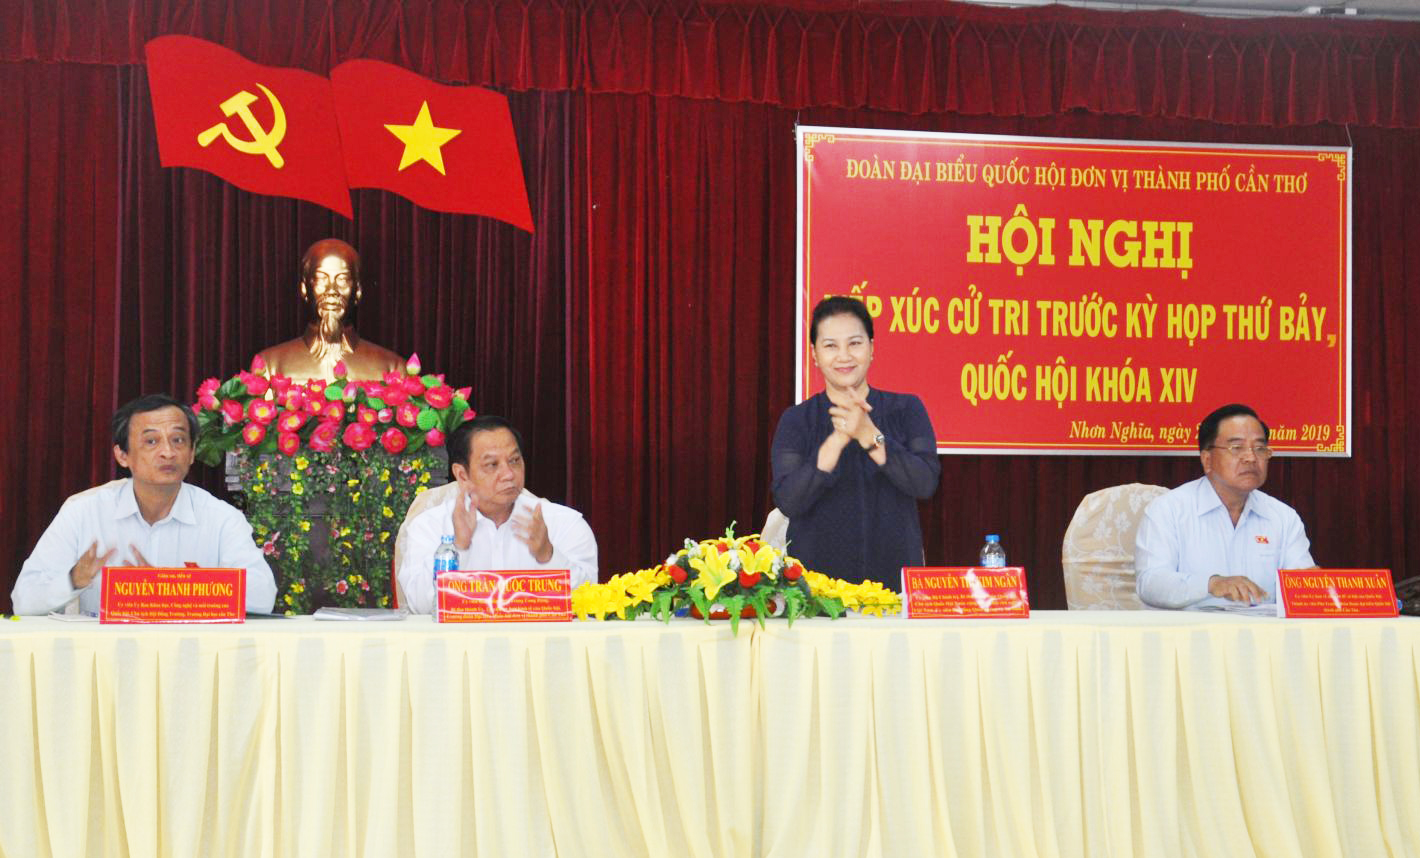 Chủ tịch Quốc hội Nguyễn Thị Kim Ngân cùng các đại biểu Quốc hội gặp gỡ cử tri xã Nhơn Nghĩa. ảnh: ANH DŨNG.